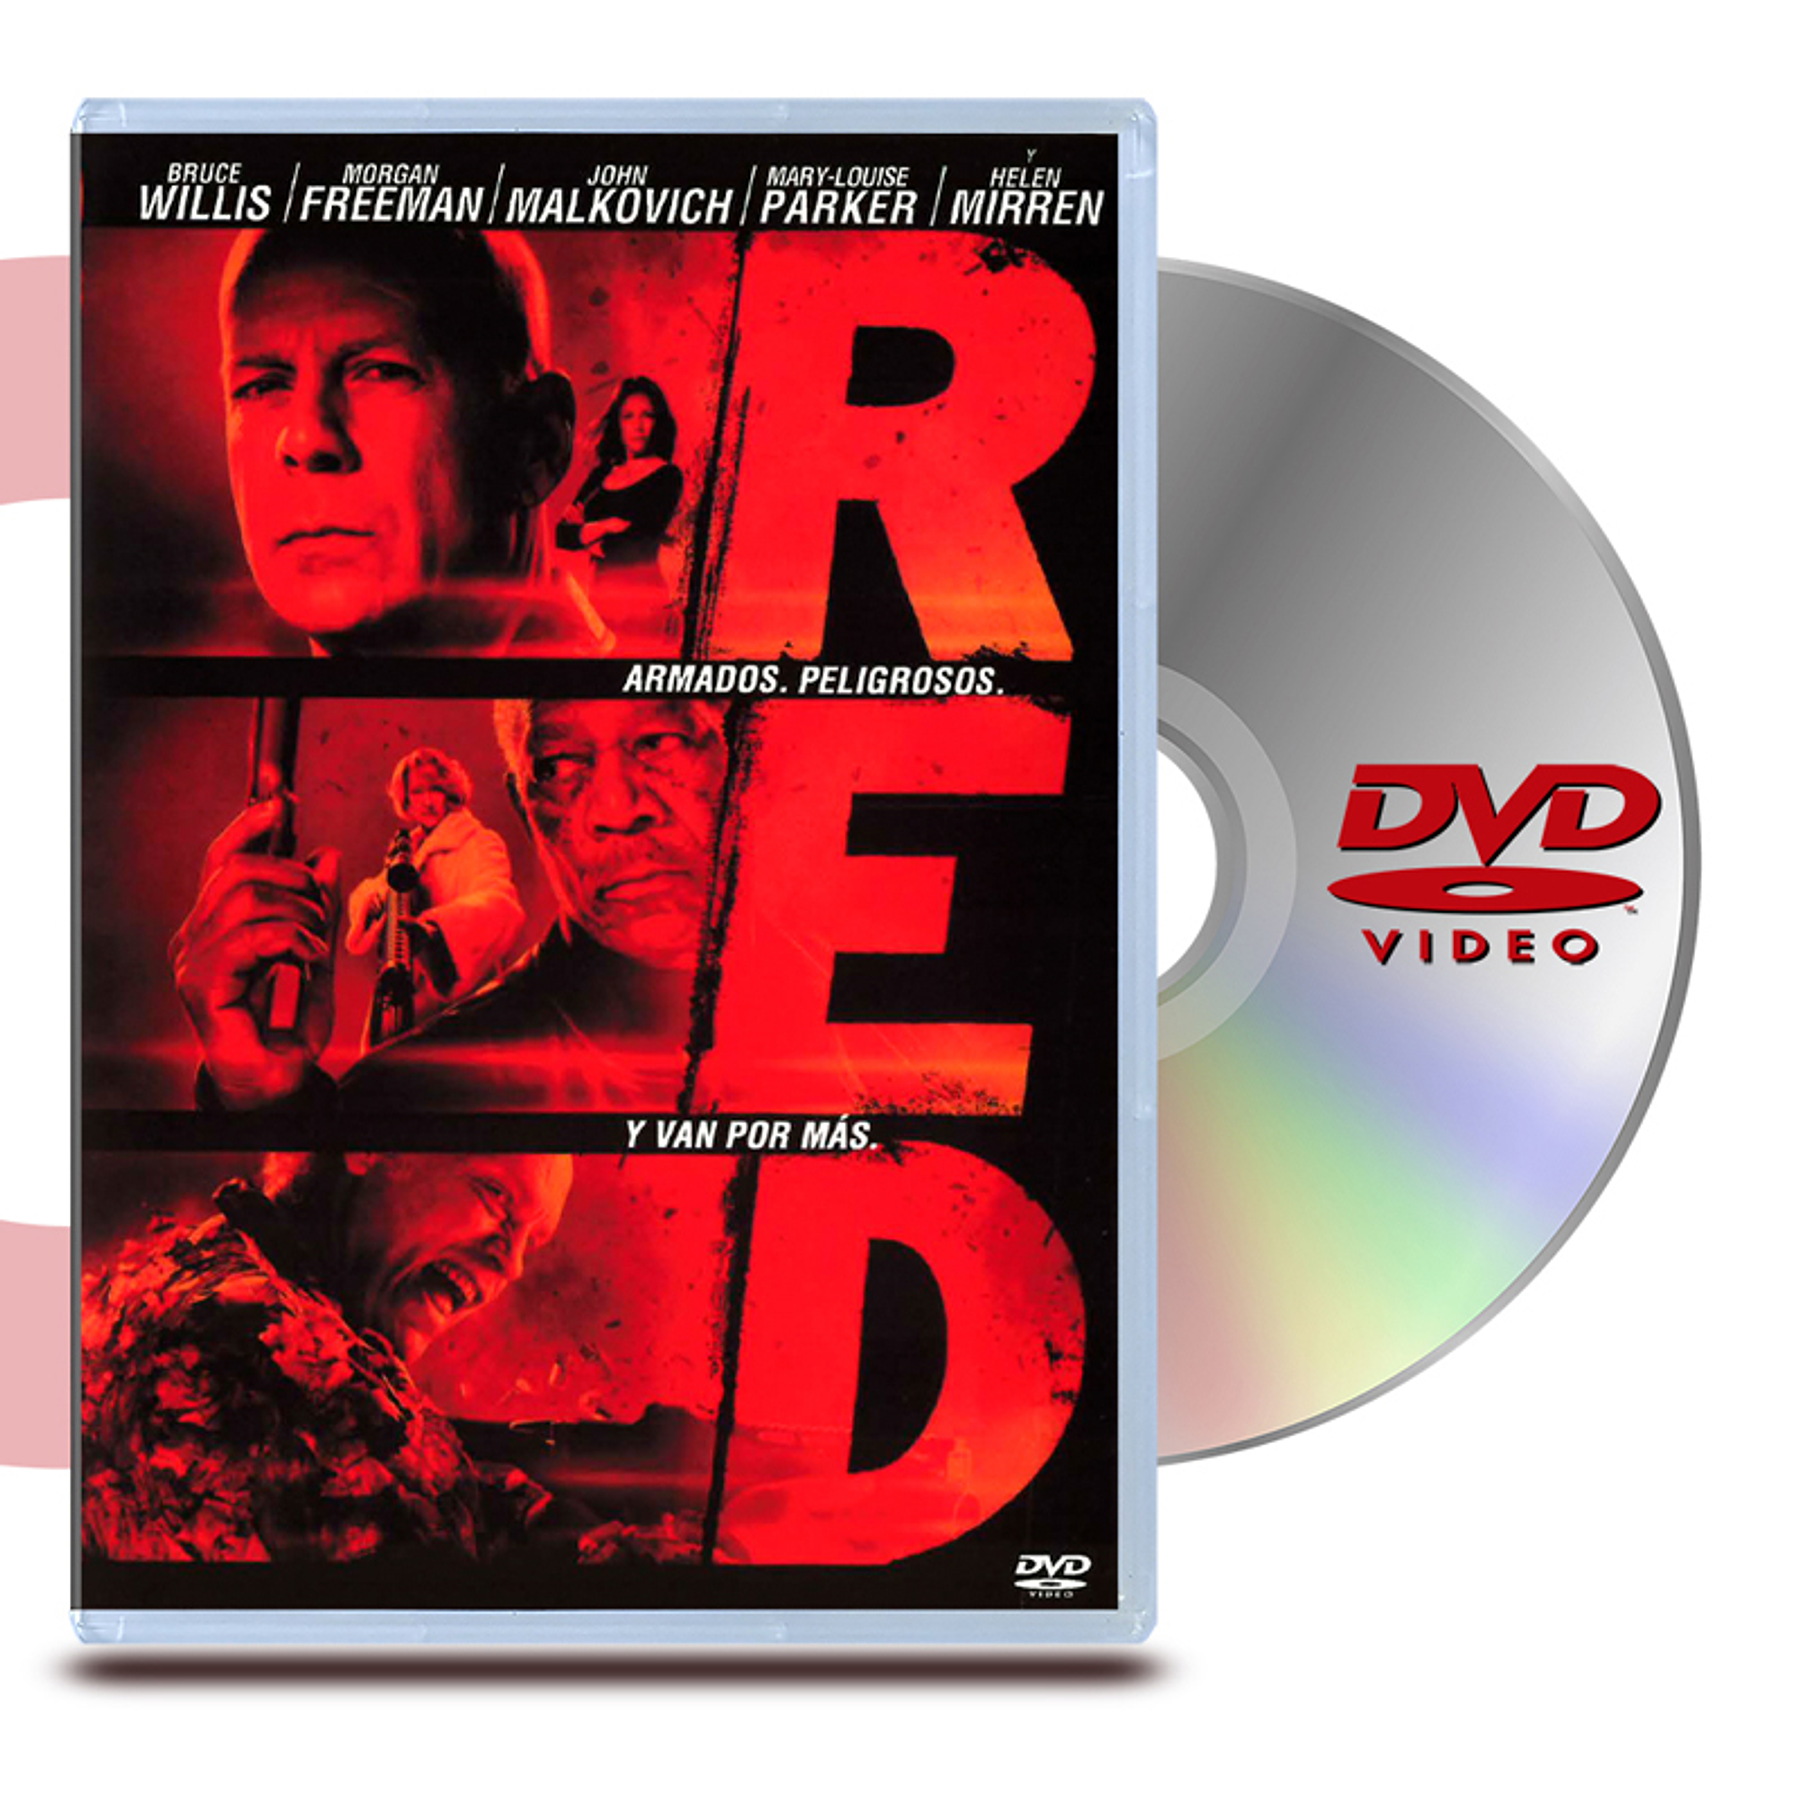 DVD RED